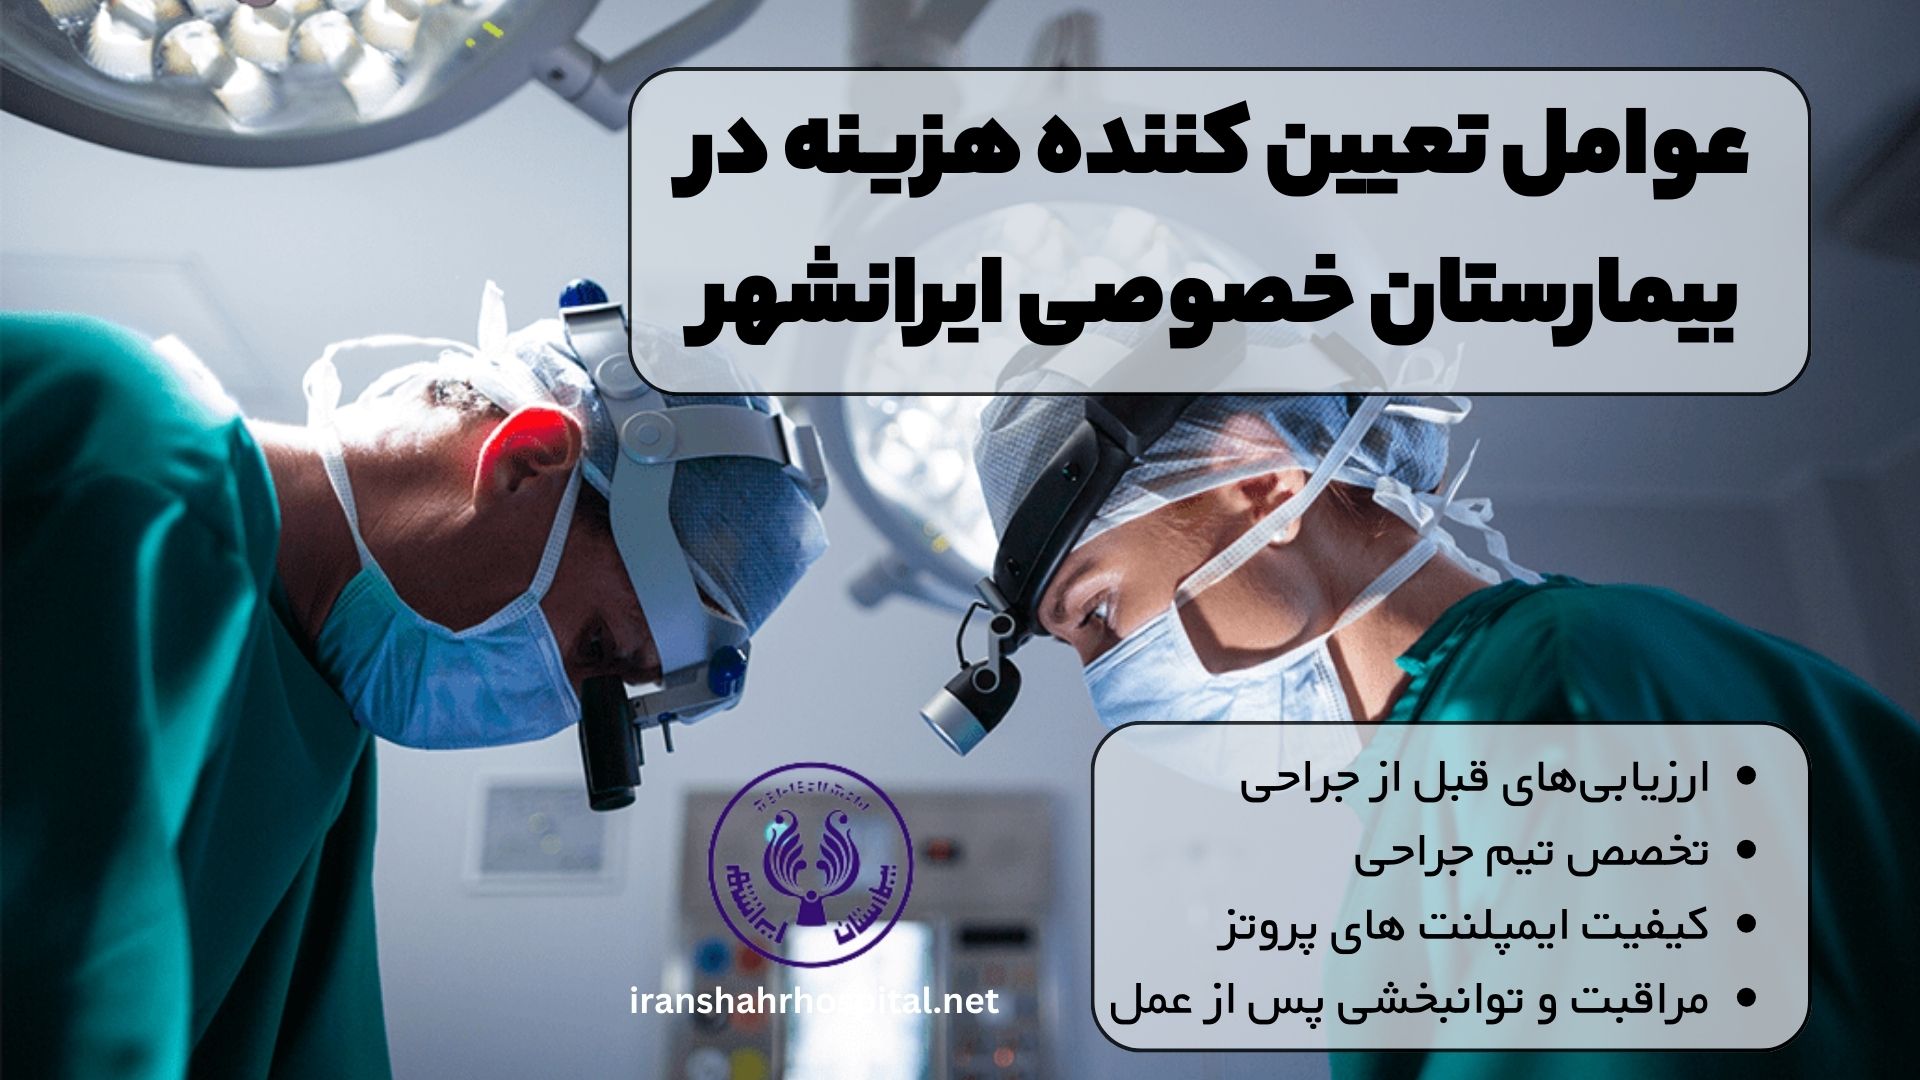 عوامل تعیین کننده هزینه در بیمارستان خصوصی ایرانشهر